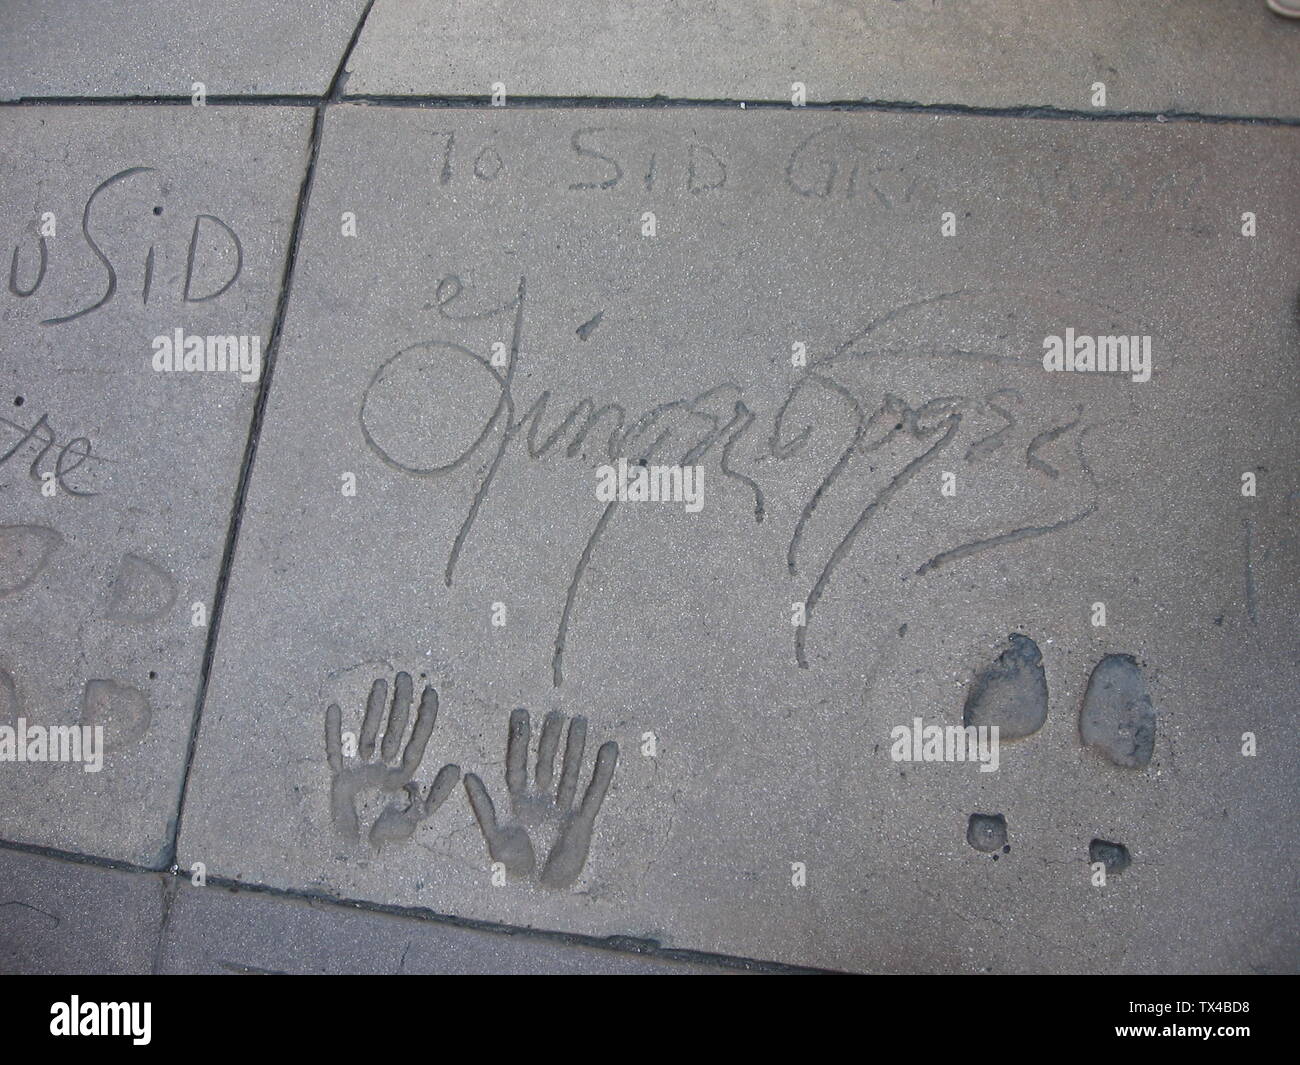 Una foto que tomo de las impresiones de mano y pie de Ginger Rogers en el teatro chino de Grauman. Tomado el 3 de septiembre de 2007.; 4 de septiembre de 2007 (fecha de carga original); Transferido de en.pedia a Commons.; Phorpus en Inglés pedia; Foto de stock